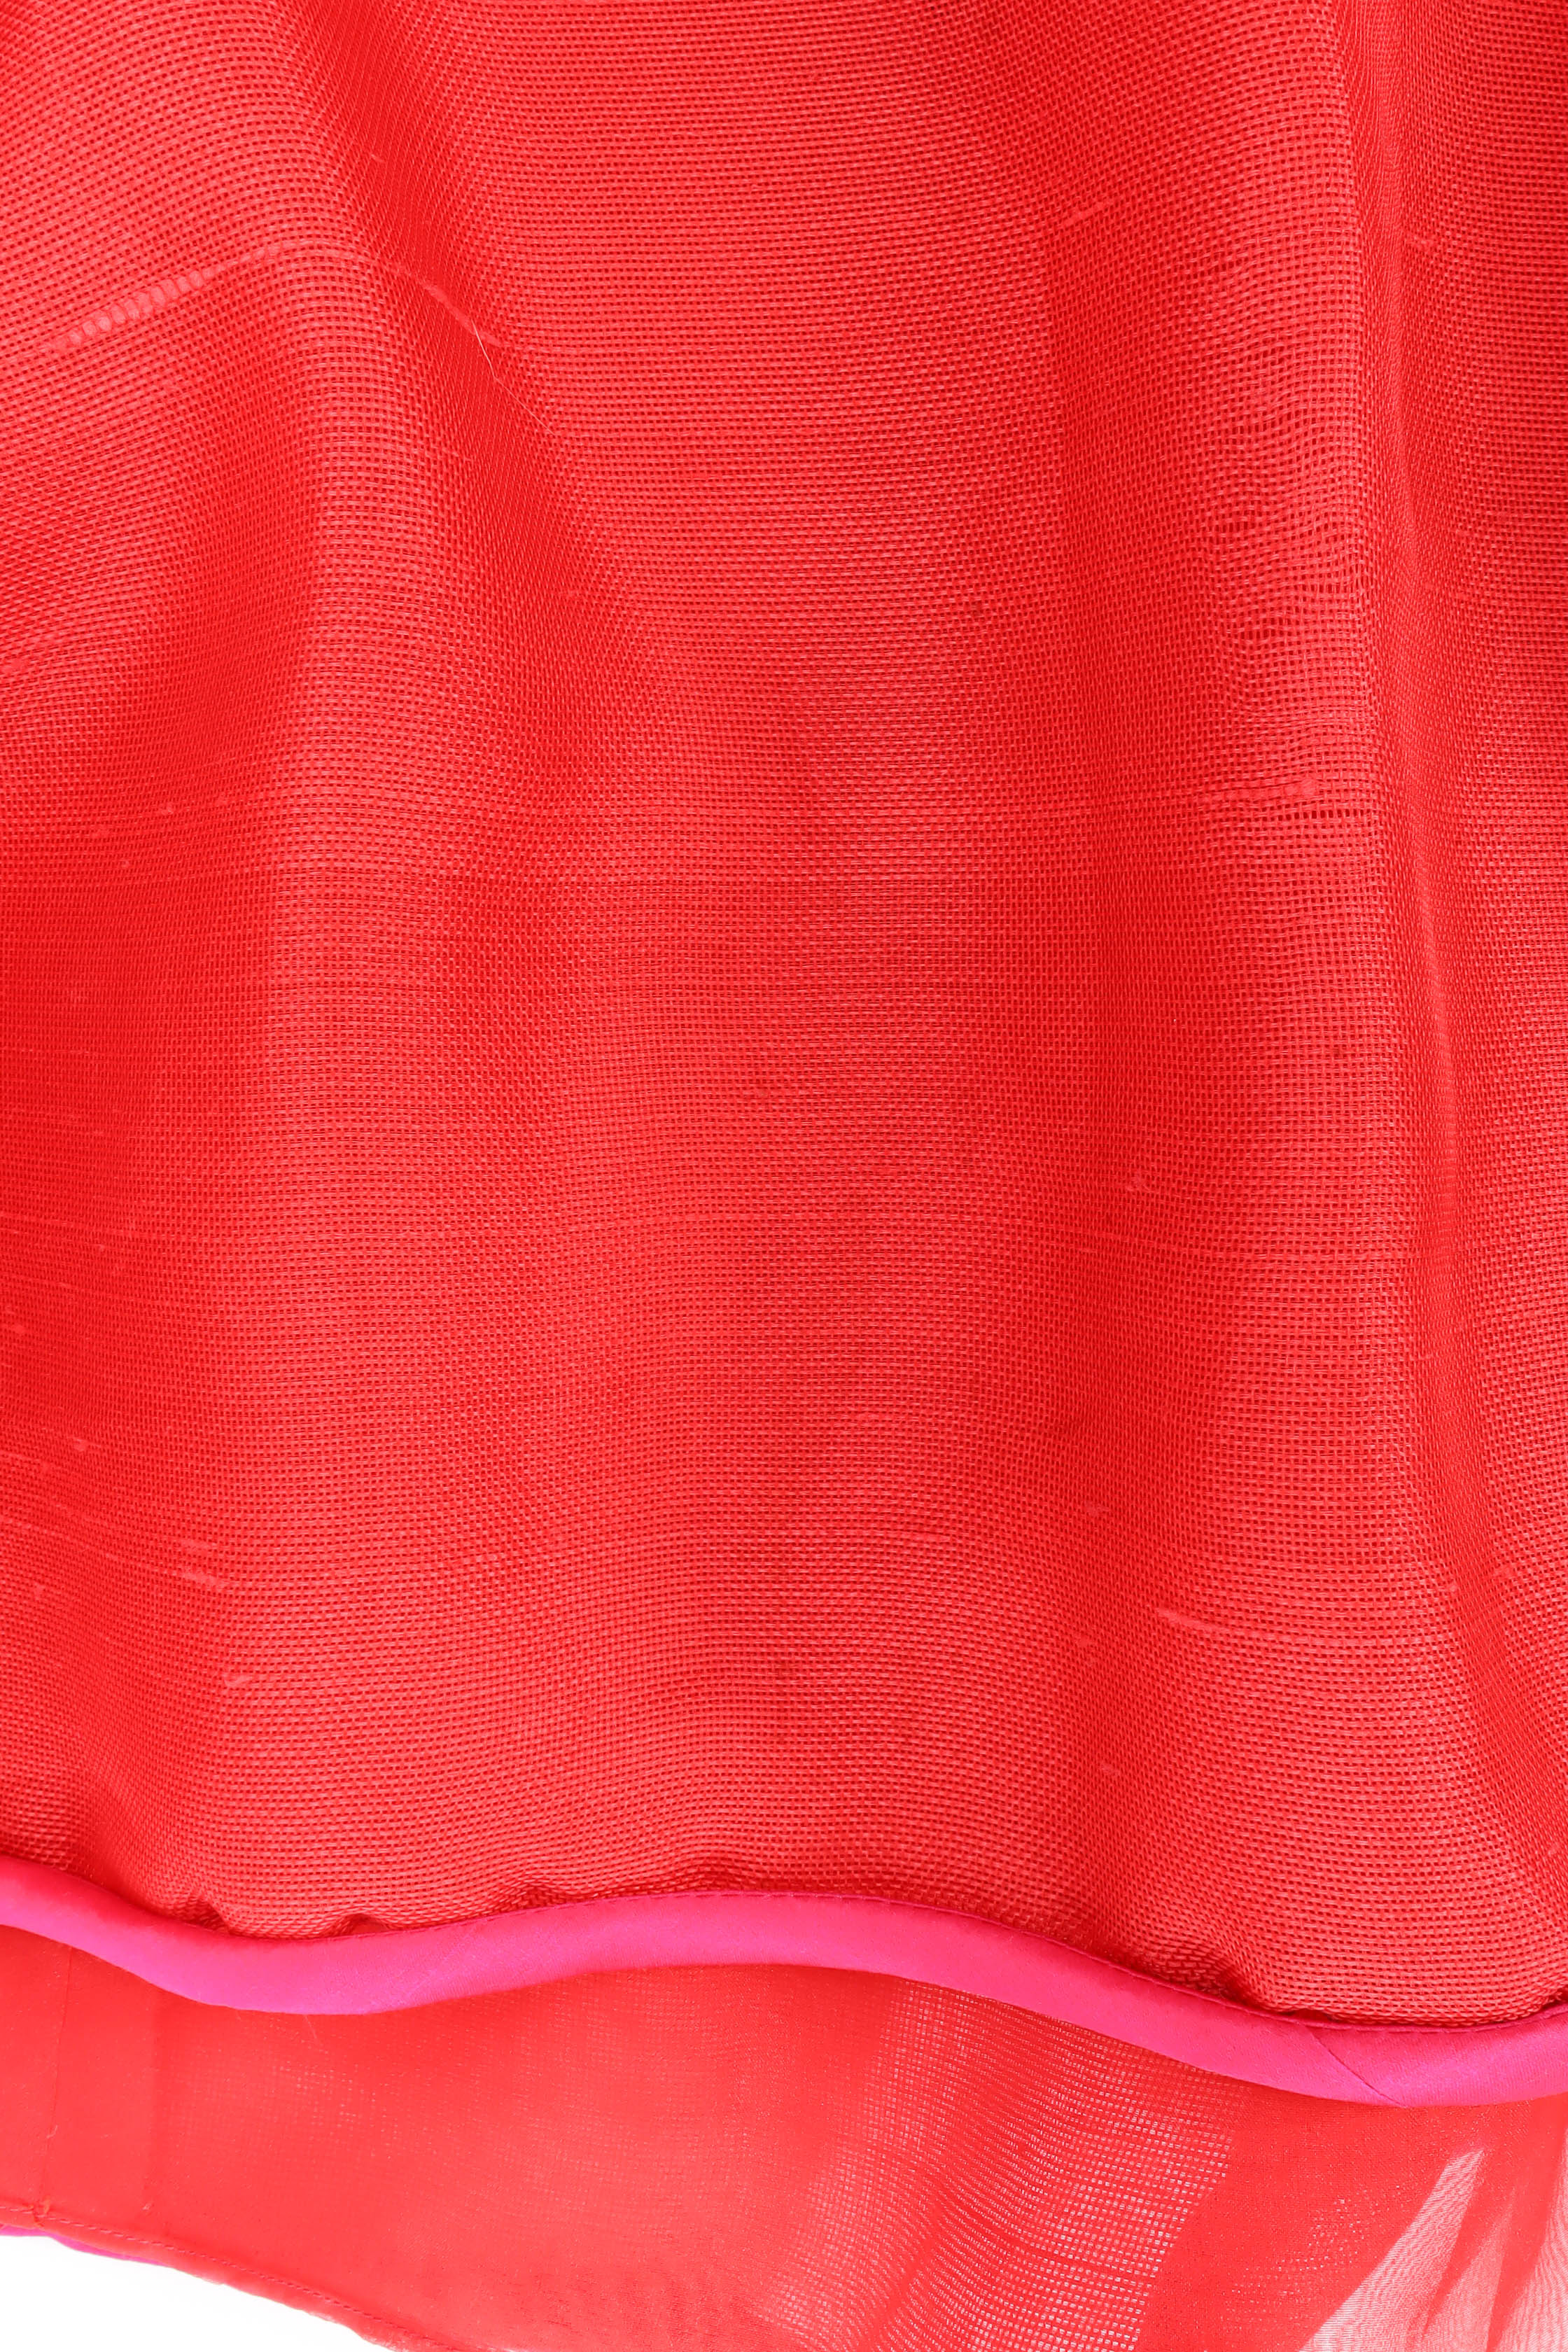 Vintage Oscar de la Renta Floral Top & Skirt Set mesh fabric skirt  @ Recess LA